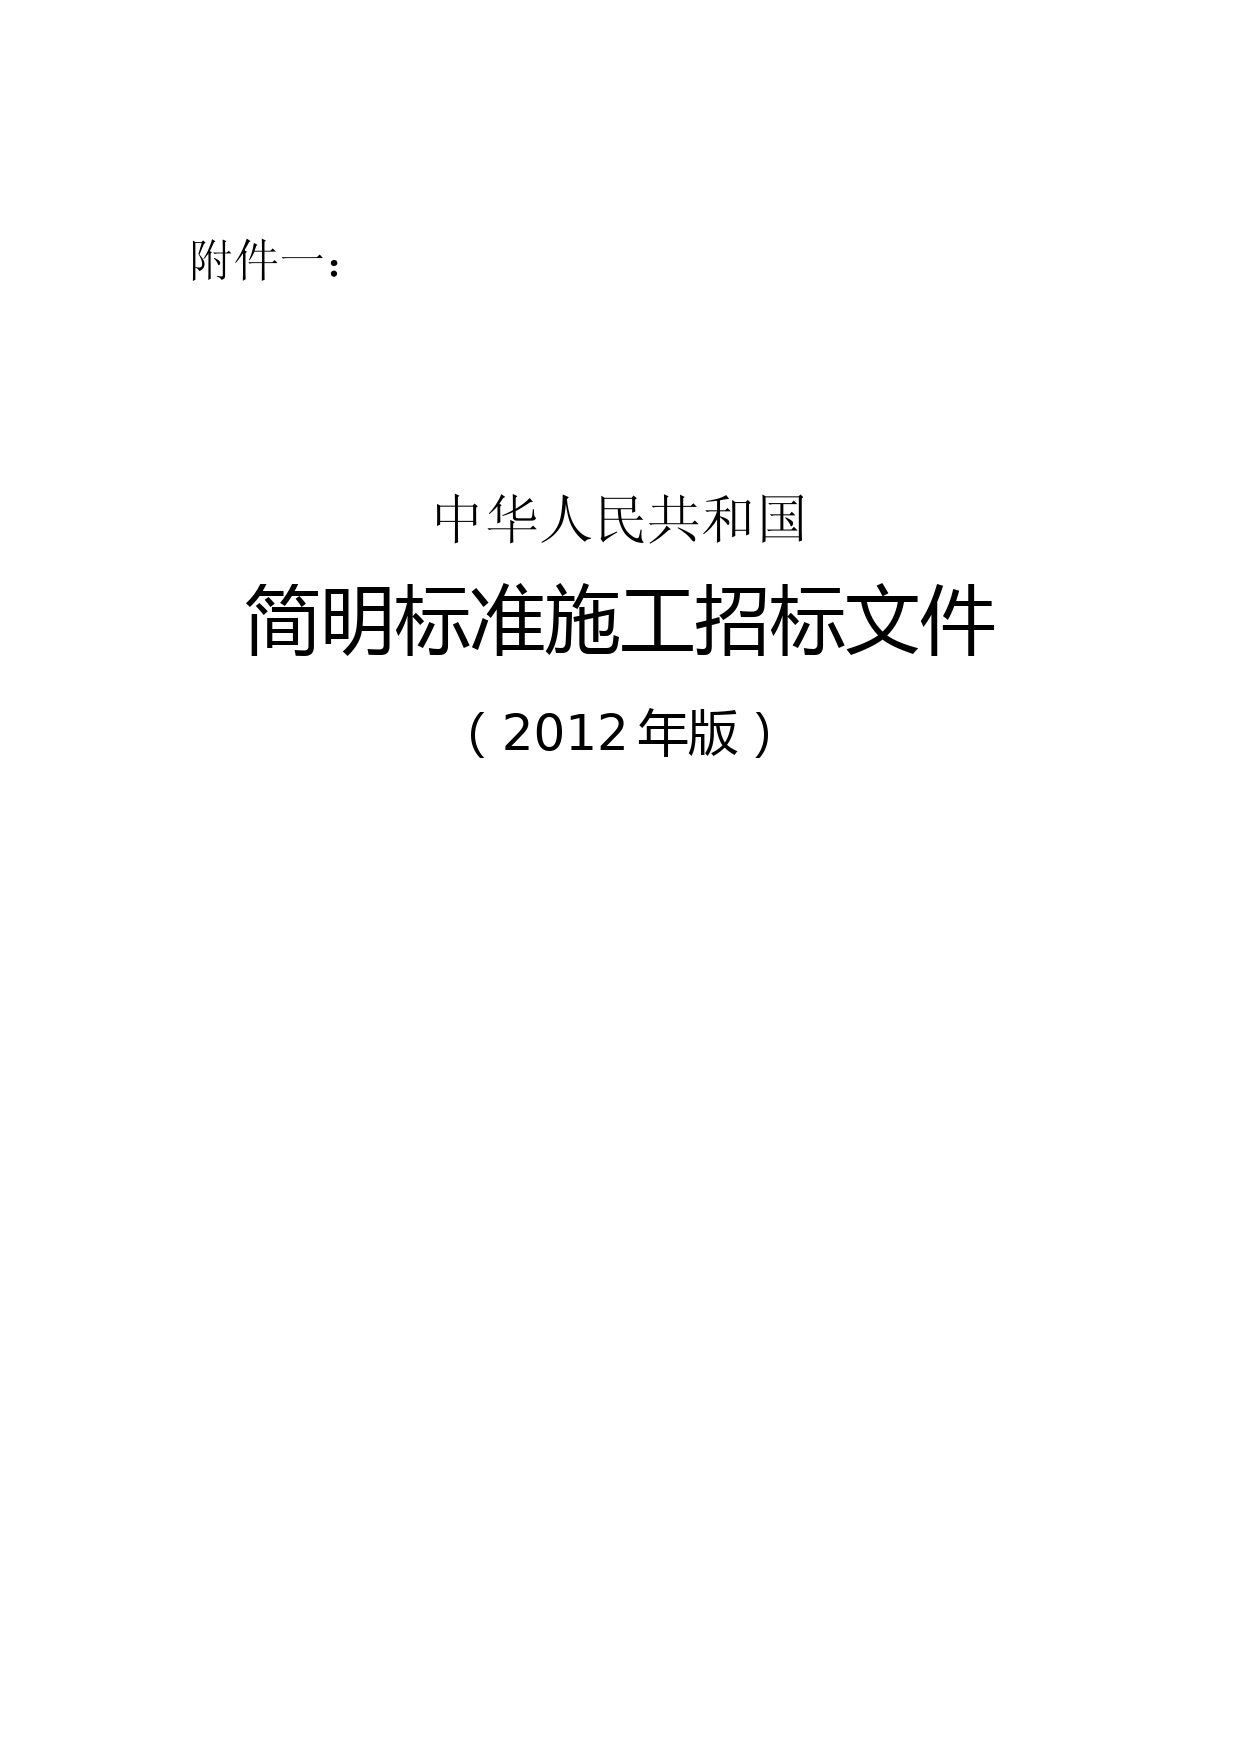 简明标准施工招标文件(2012年版)